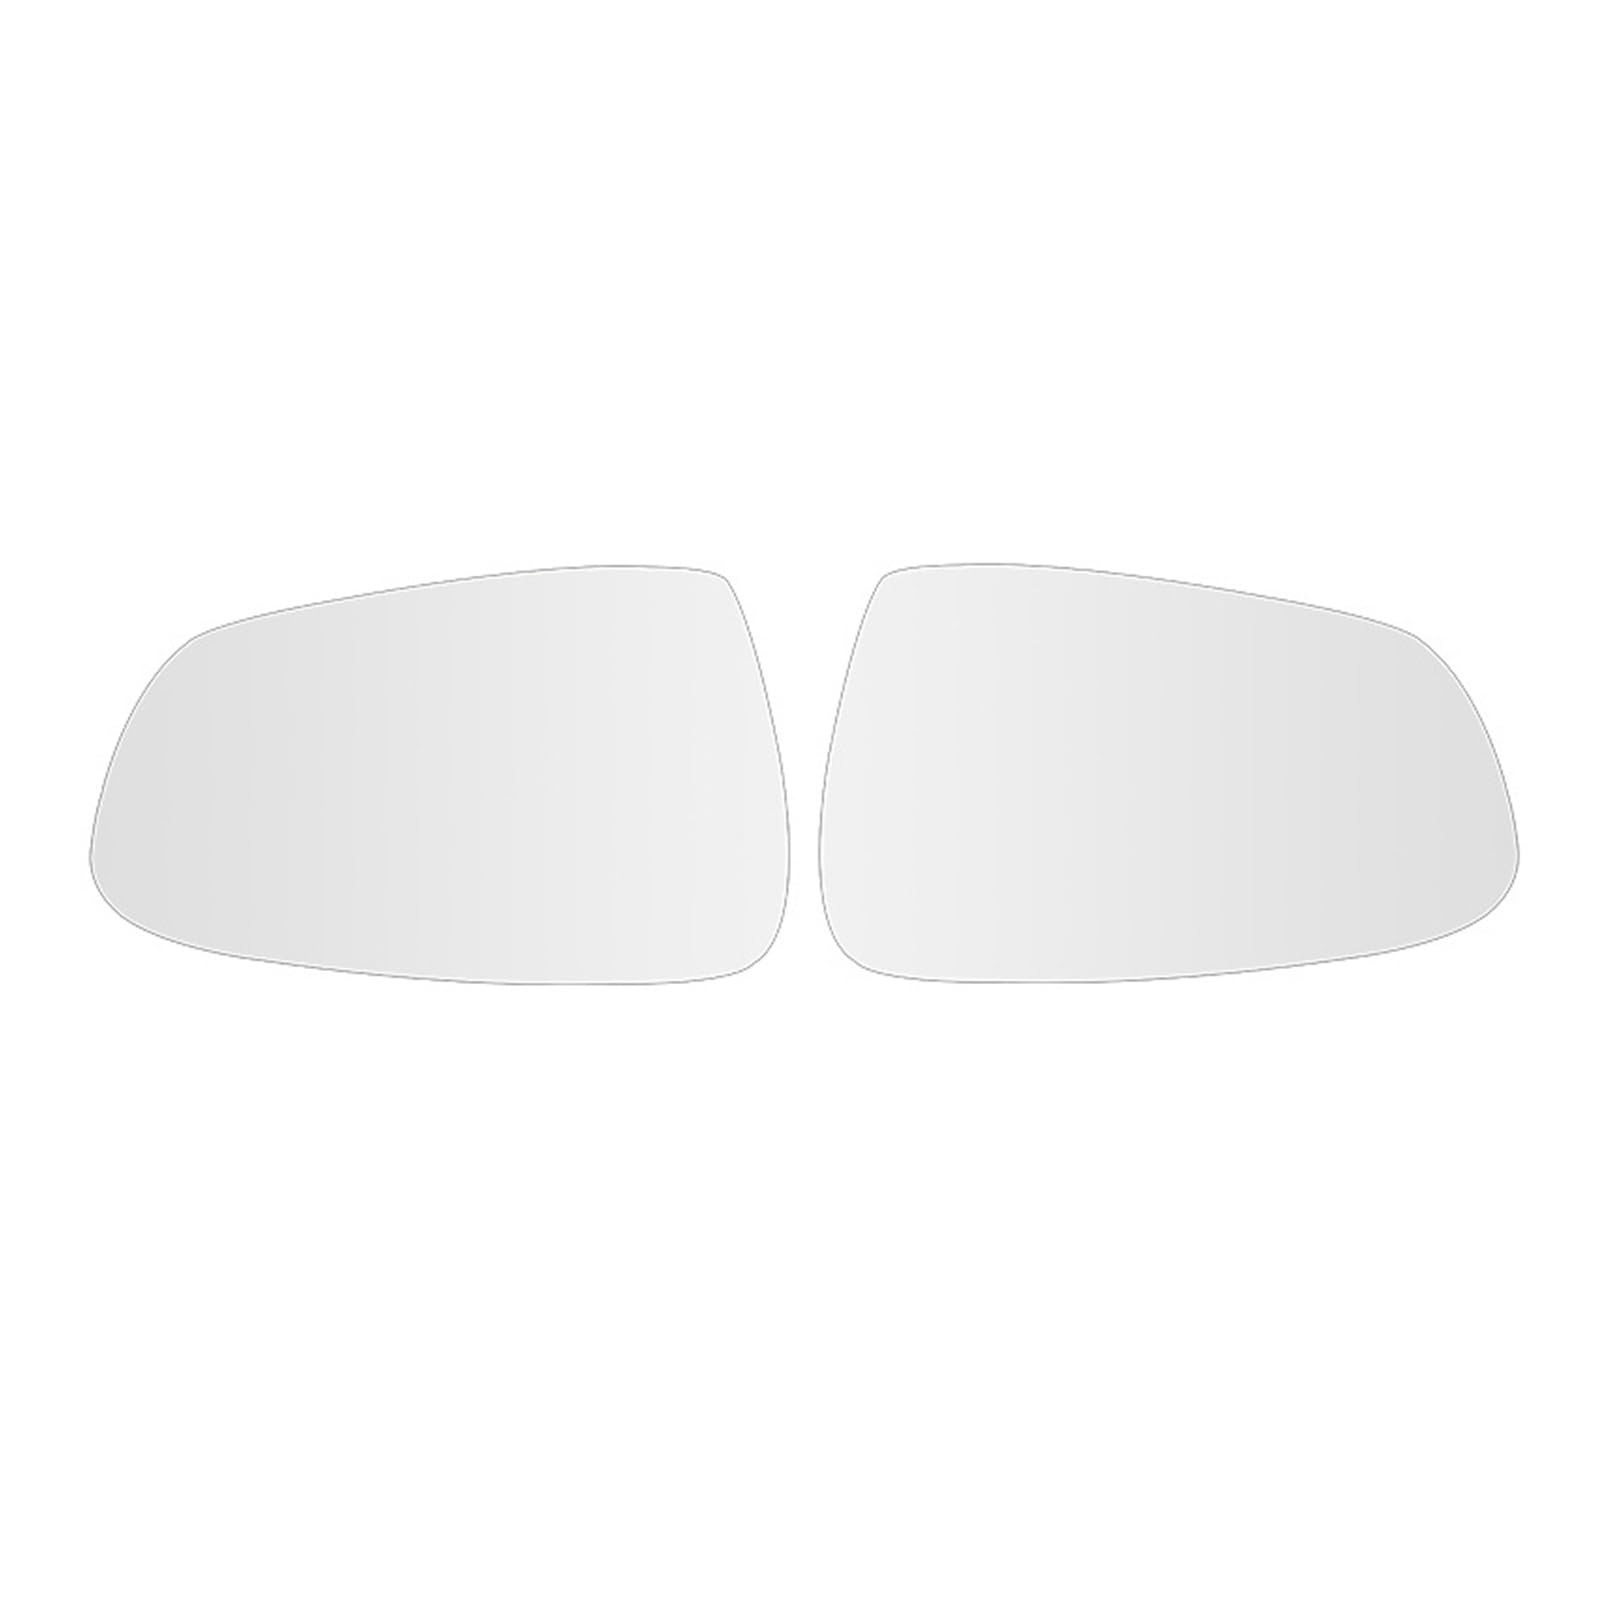 Auto Spiegelglas Für Tesla Für Modell 3 YXS 1 Paar 800R Weitwinkel Große Vision Rückspiegel Heizung Replacementen Anti Blenden umkehr Seitenspiegelglas (Farbe : White for model y) von SPANN